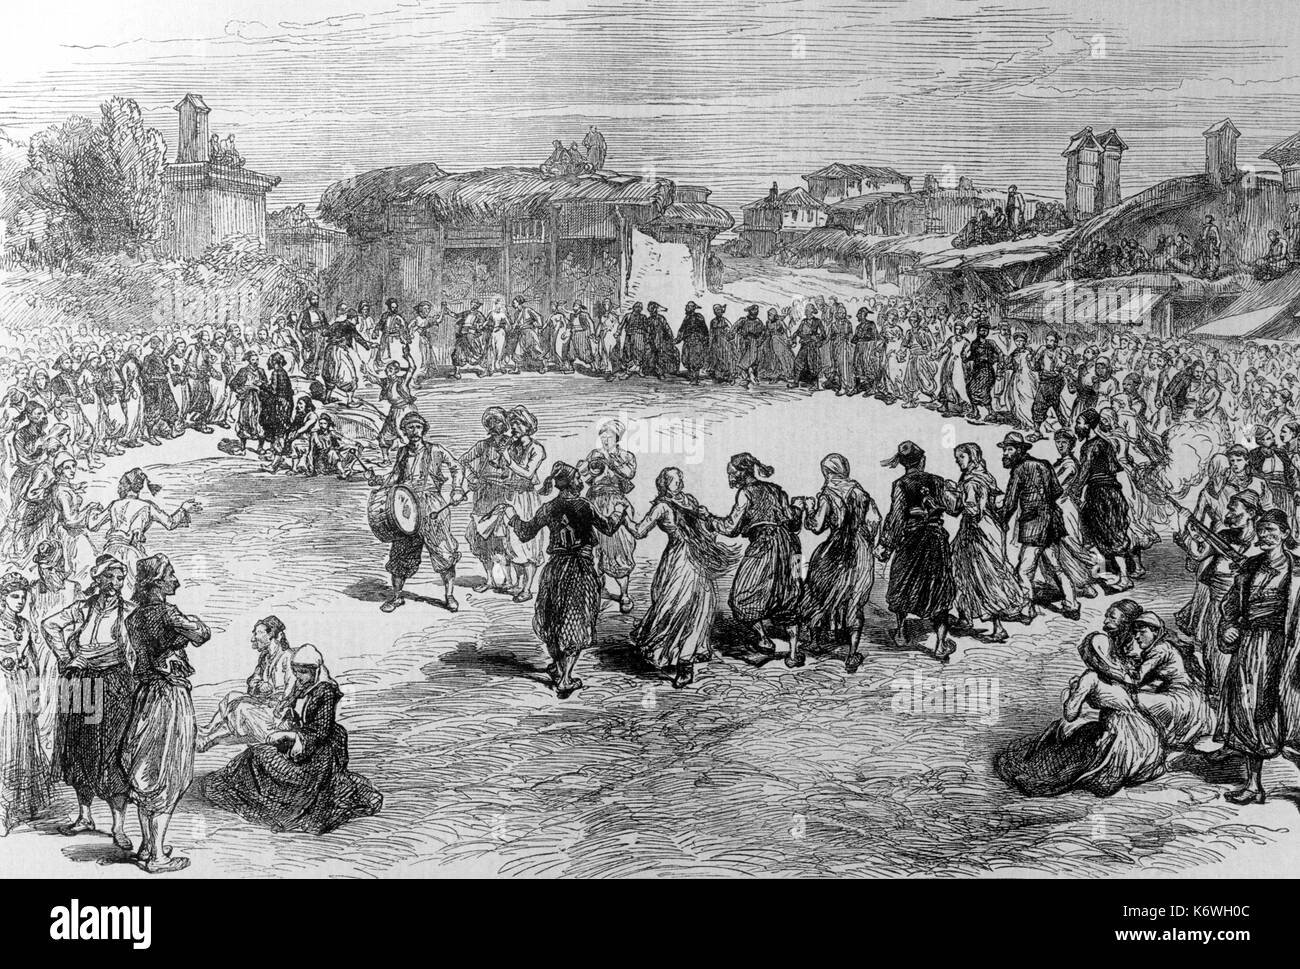 Greco danza folk, Festival di Pasqua nel Troad, Turchia. Da Illustrated London News 1878. Foto Stock